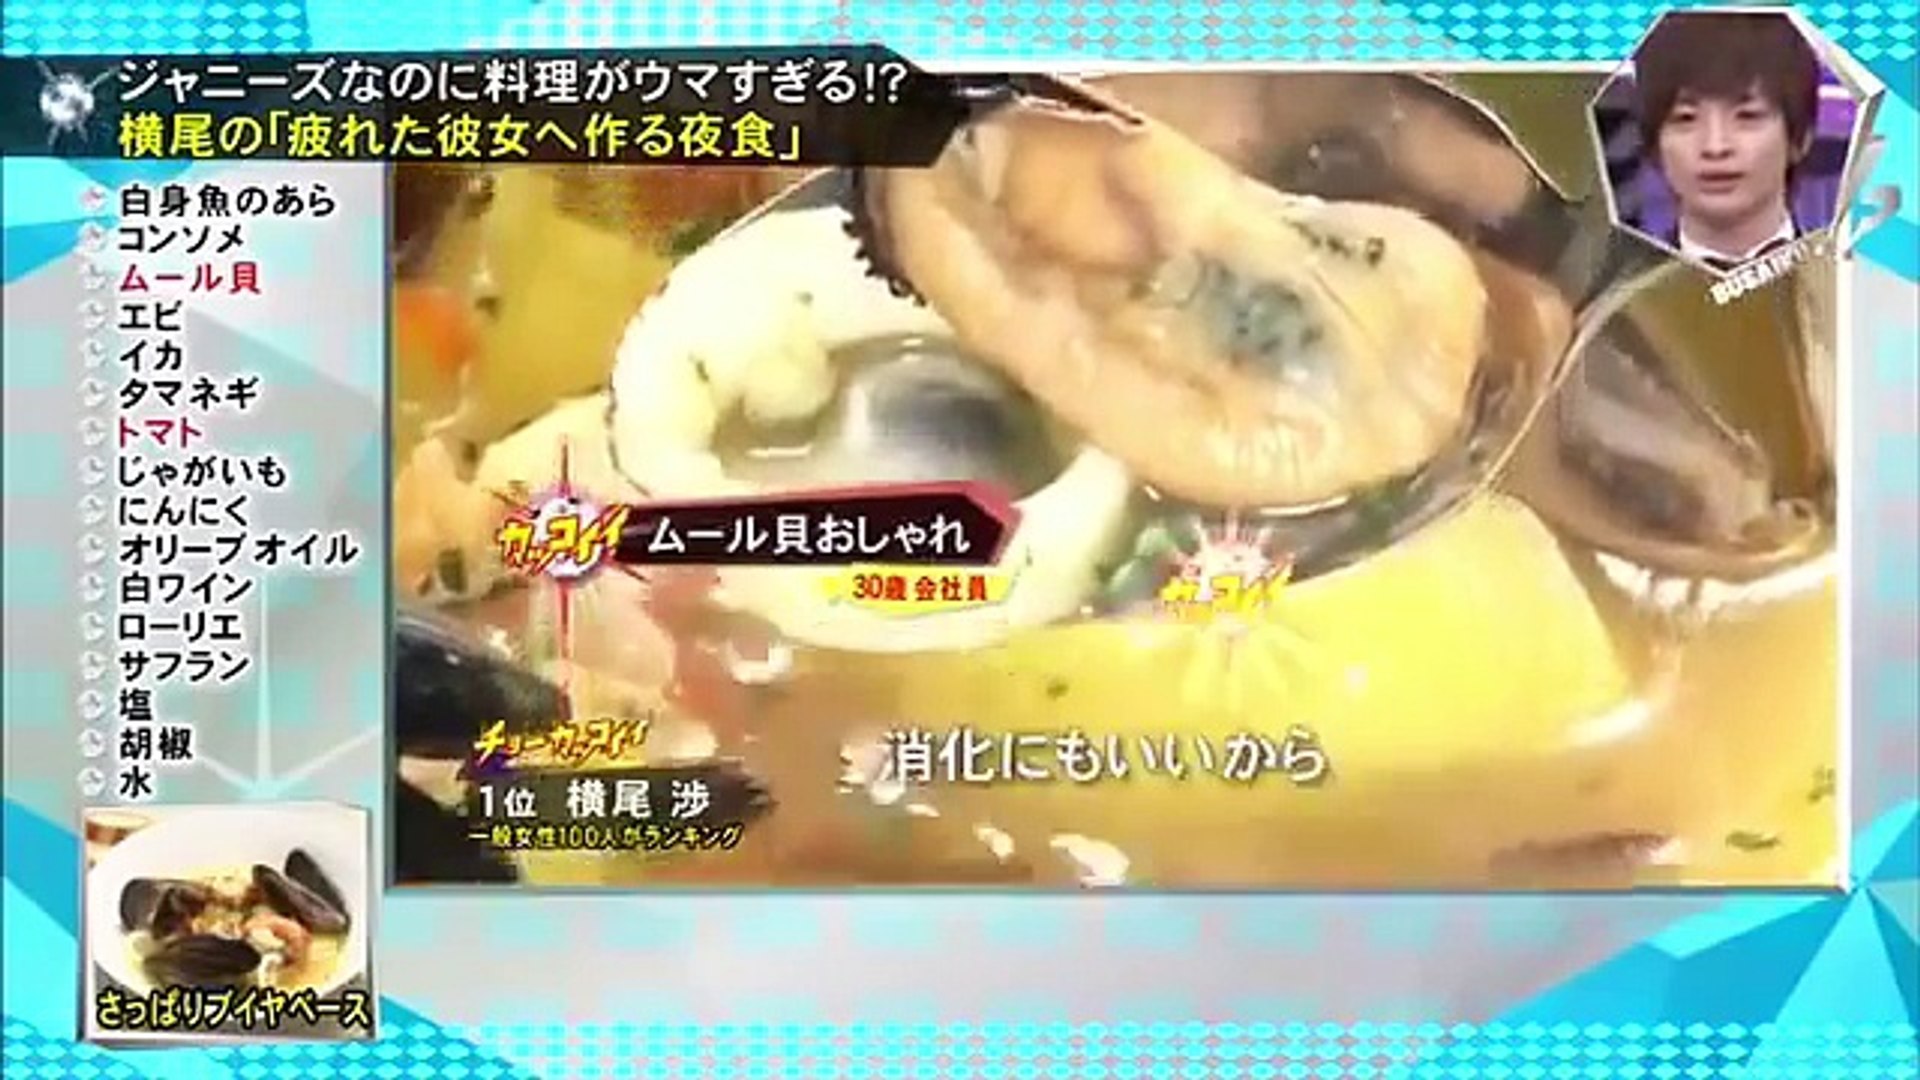 横尾渉の料理シーンだけを抜粋 キスマイbusaiku Video Dailymotion